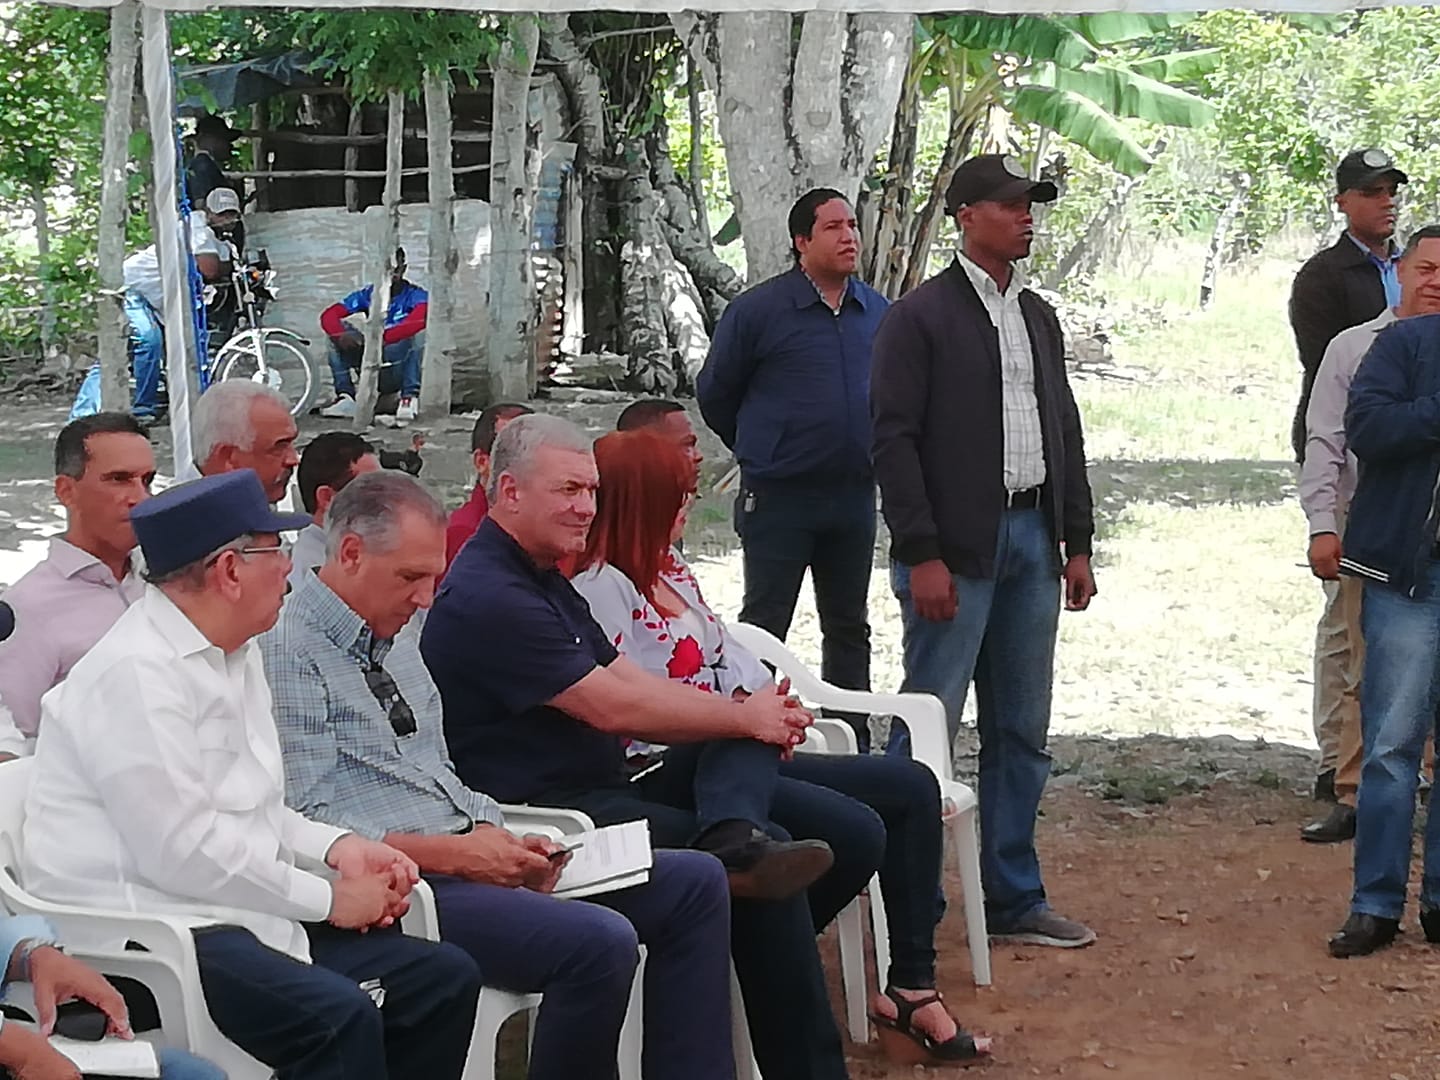 viernes, 26 de julio de 2019 Visita Sorpresa 258... Presidente Danilo Medina visita Las Cuchillas